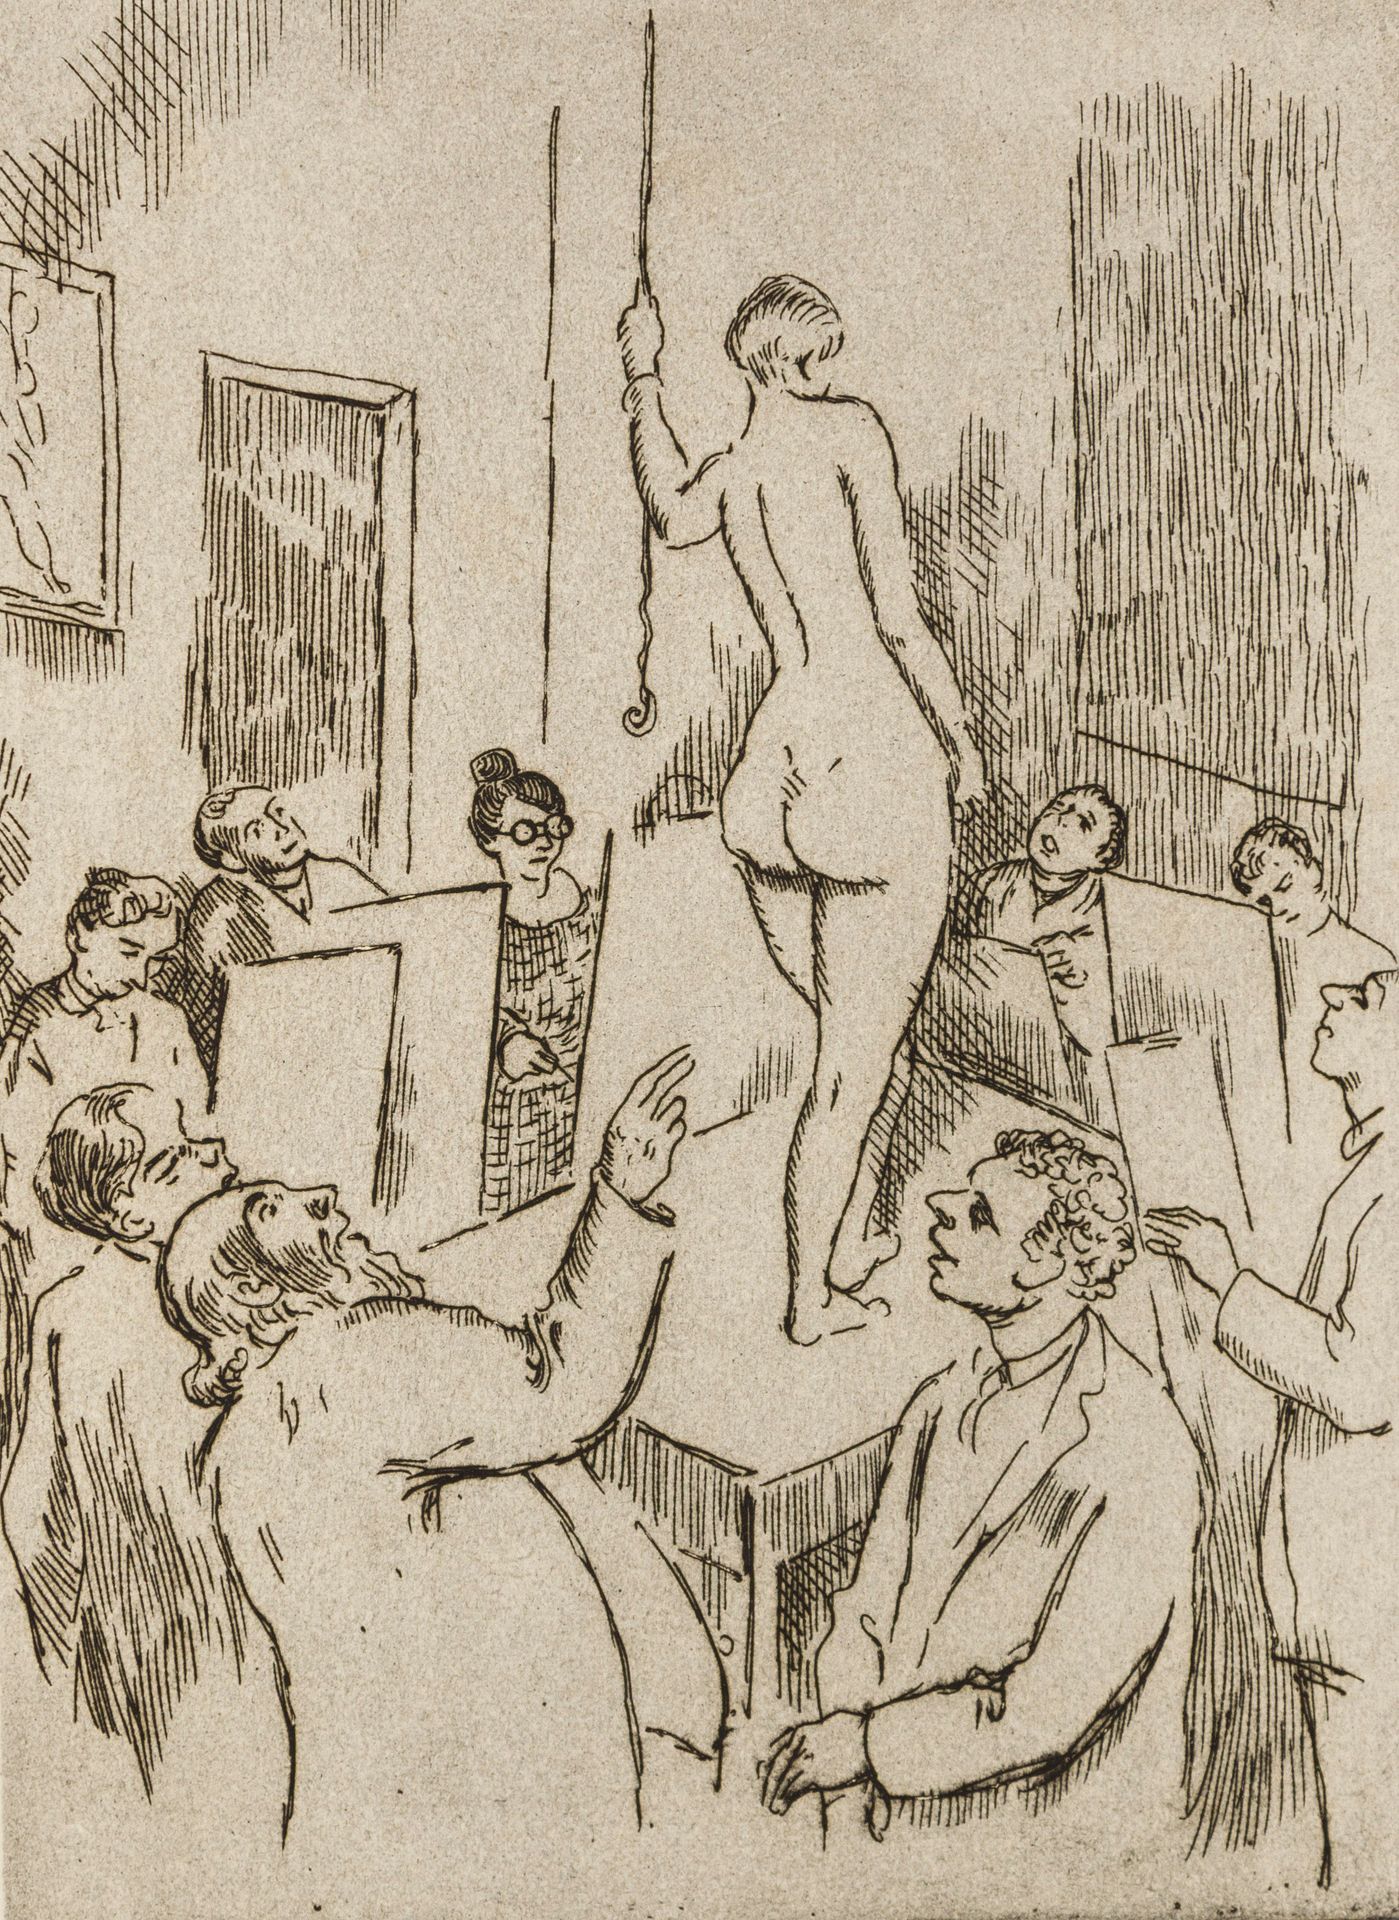 Orlik, Emil 奥利克，埃米尔（1870-1932）。绘画学校，画裸体。蚀刻画，铜版画。纸张大小为33.3:23厘米。